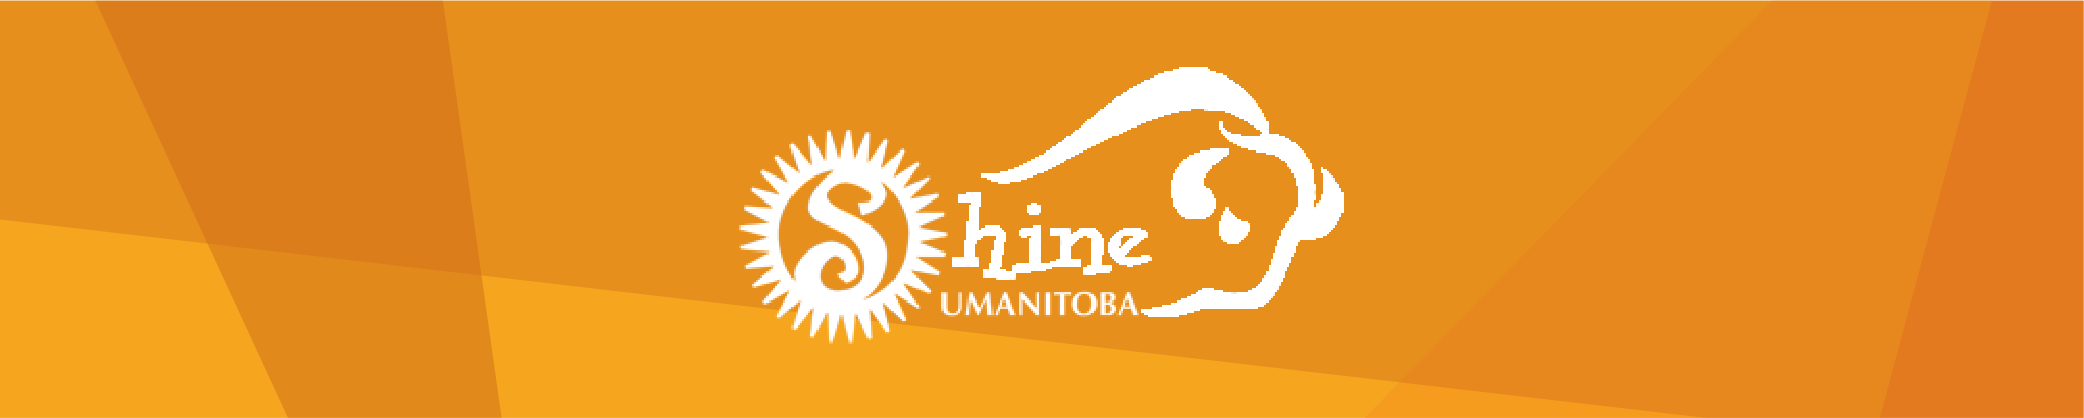 Shinerama Committee